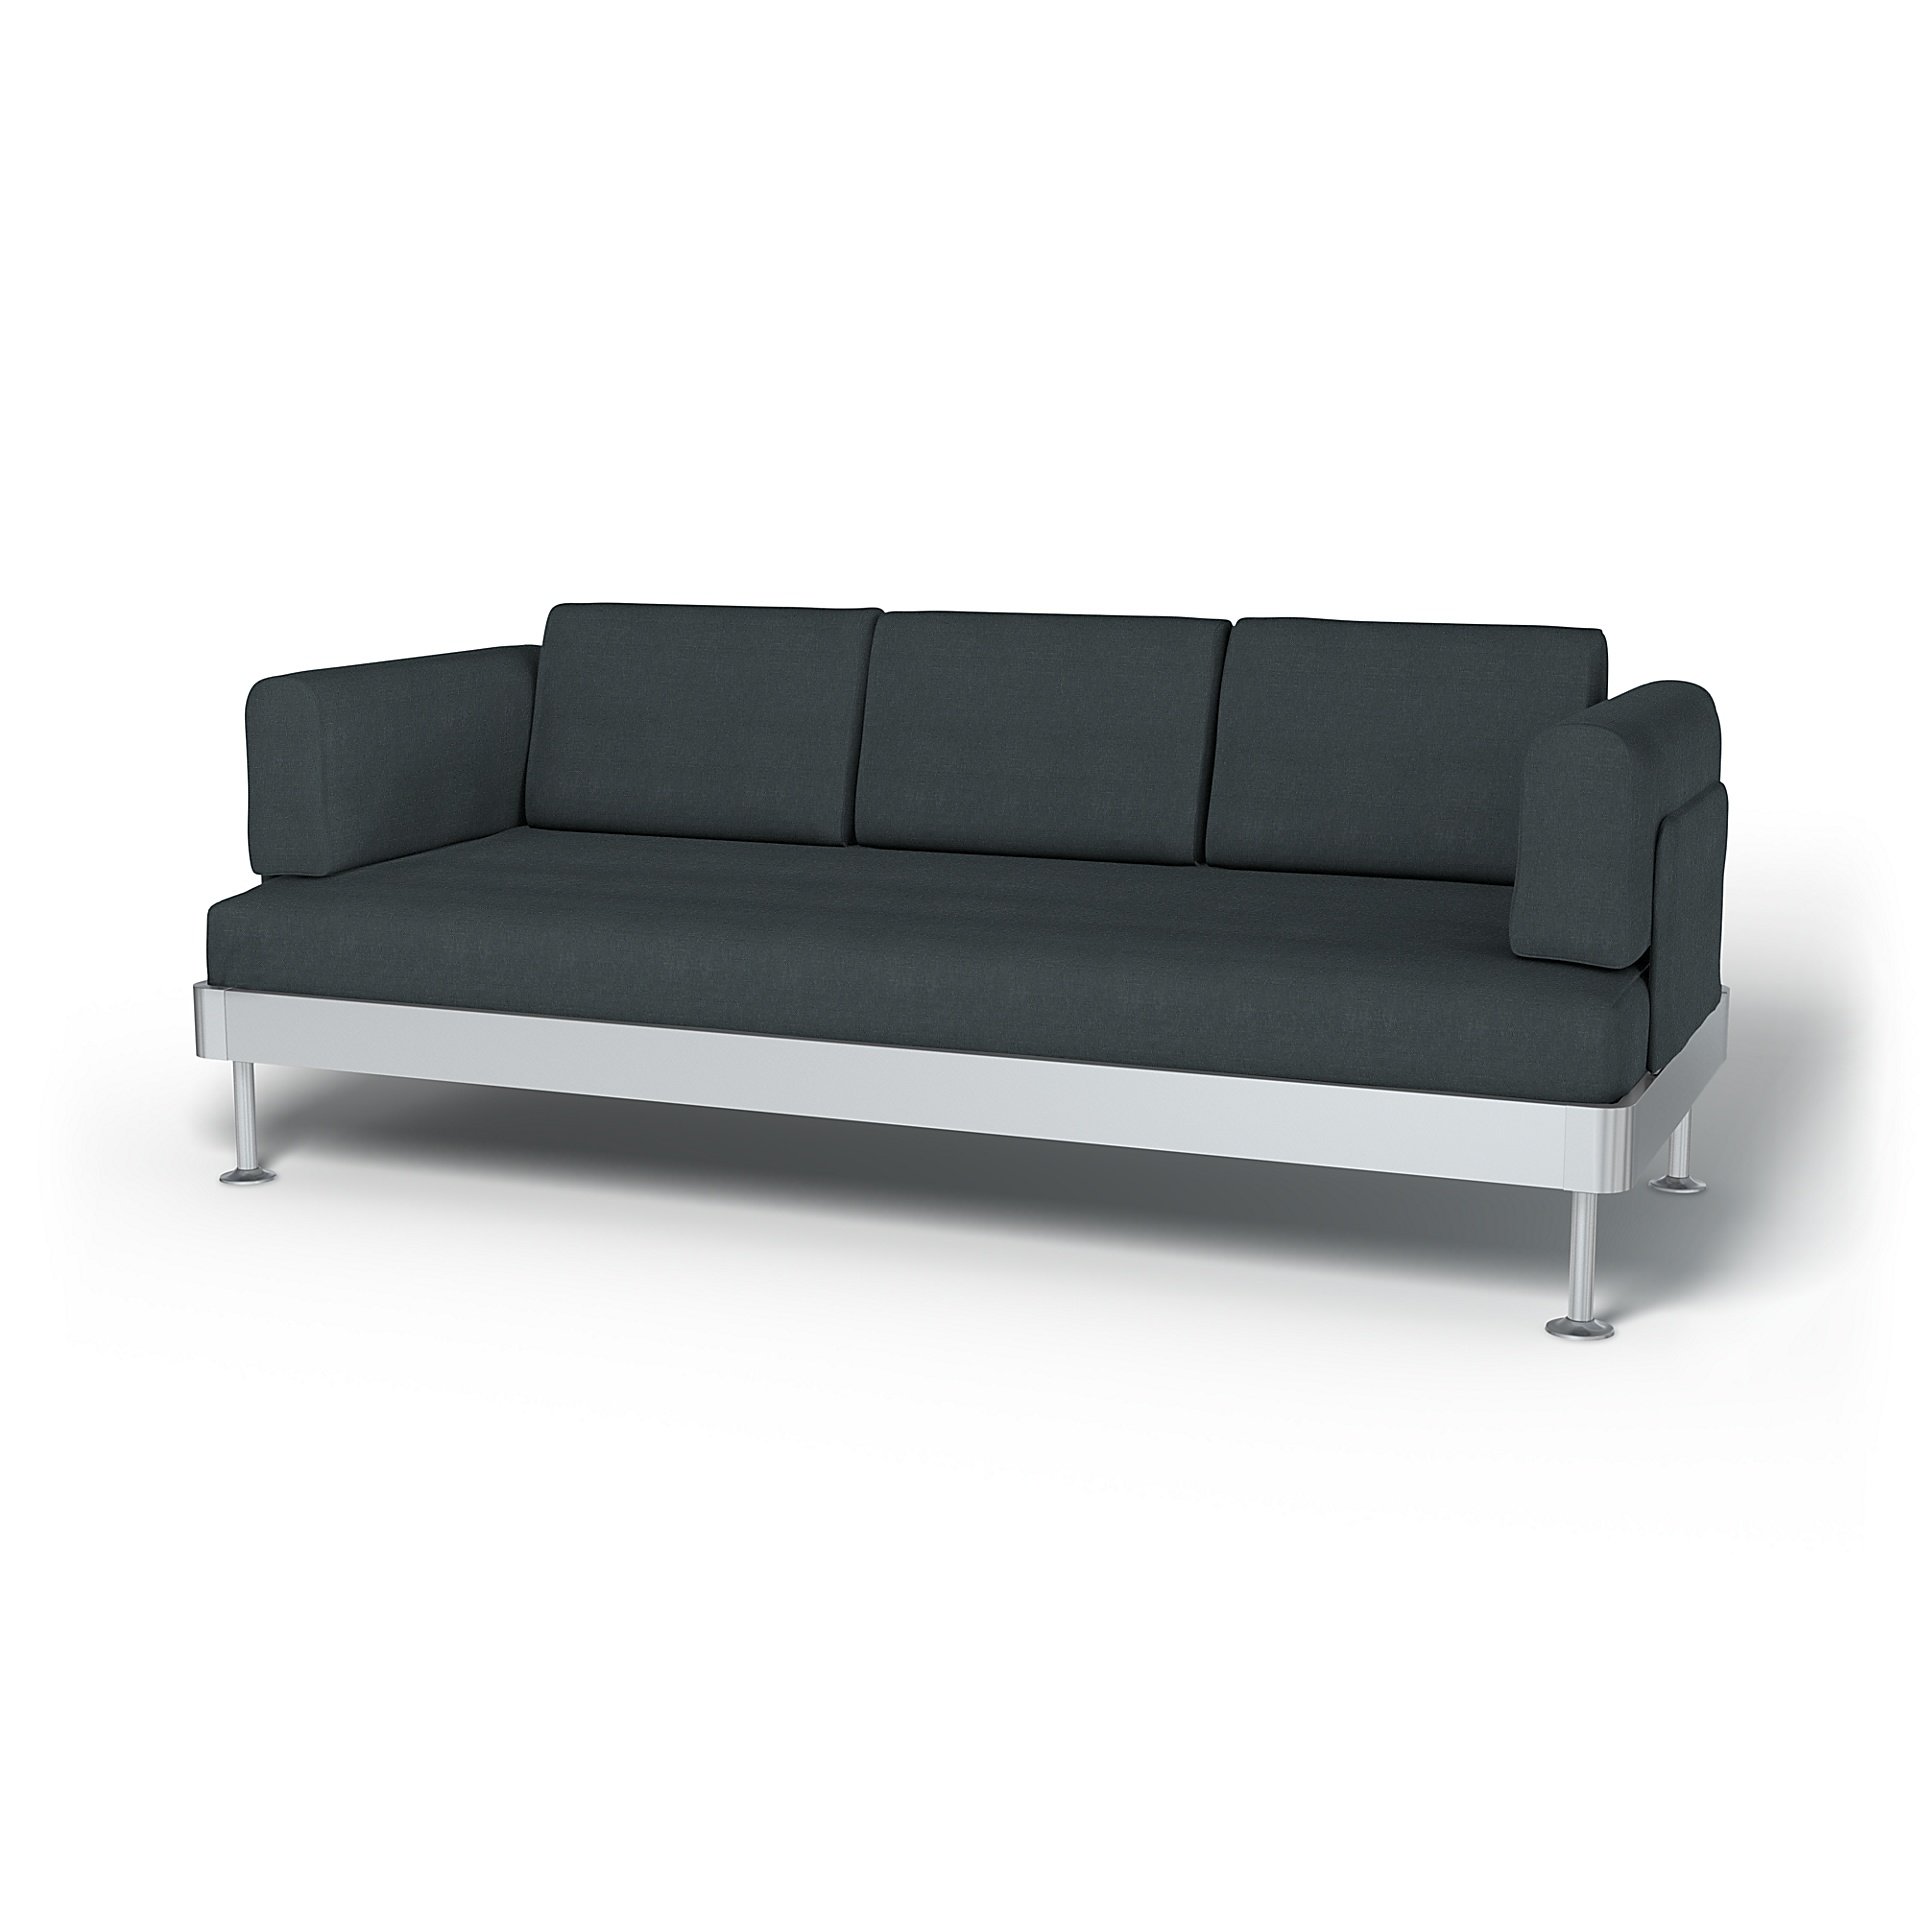 IKEA - Delaktig 3 Seater Sofa Cover, Graphite Grey, Linen - Bemz